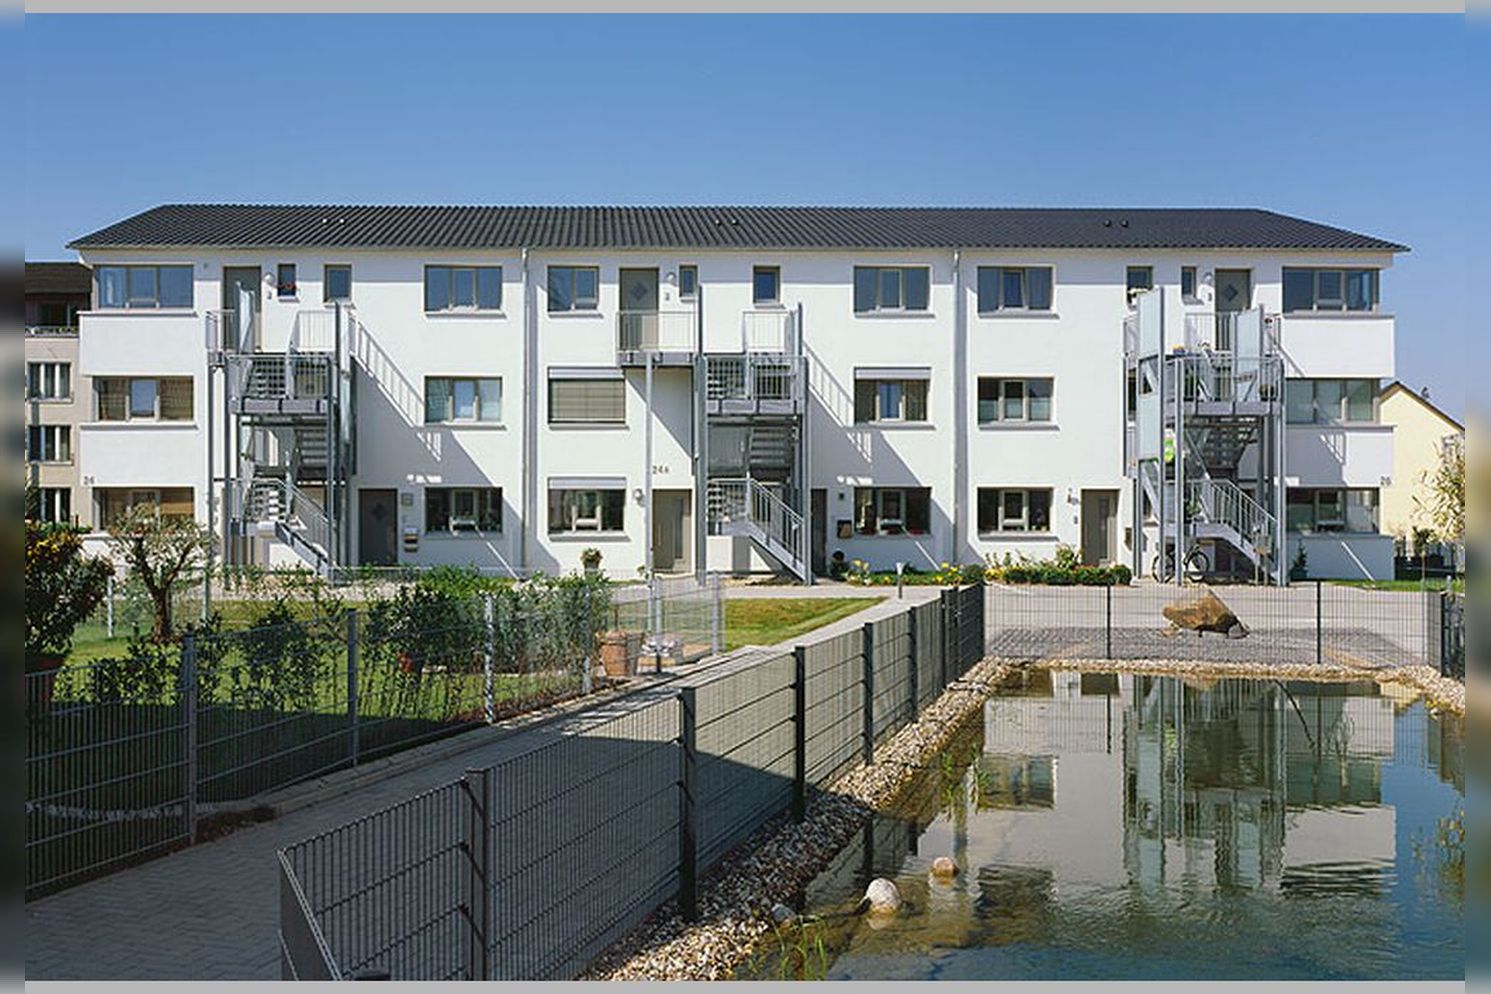 Immobilie Nr.D.dorf-Itter 100 - Reihenhäuser, Doppelhaushälften, Eigentumswohnungen auf Erbpacht - Bild 15.jpg